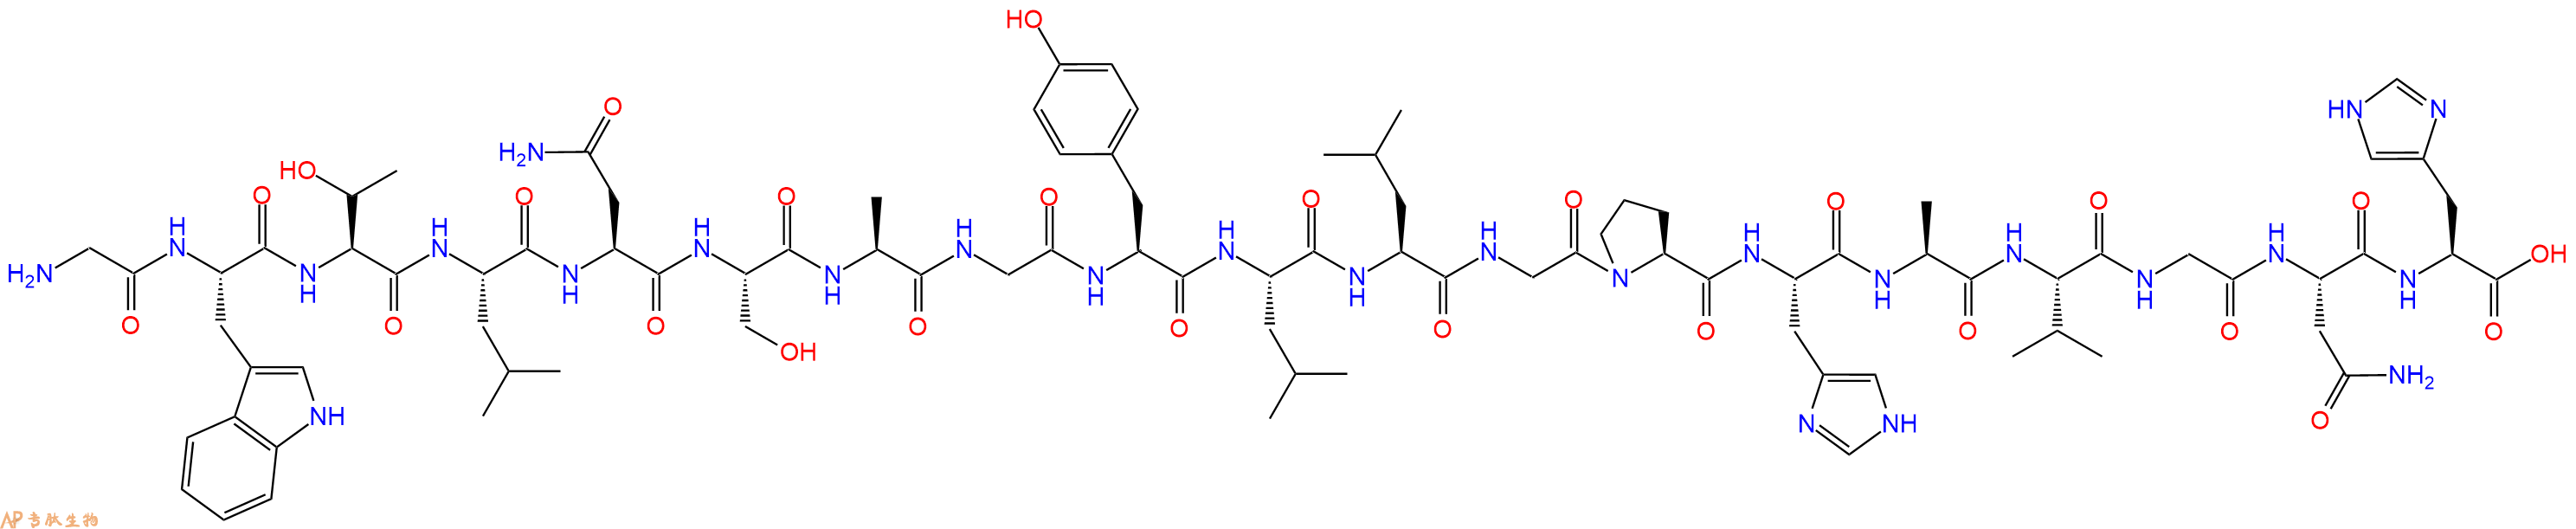 专肽生物产品甘丙肽Galanin (1-19) (human)136005-51-1